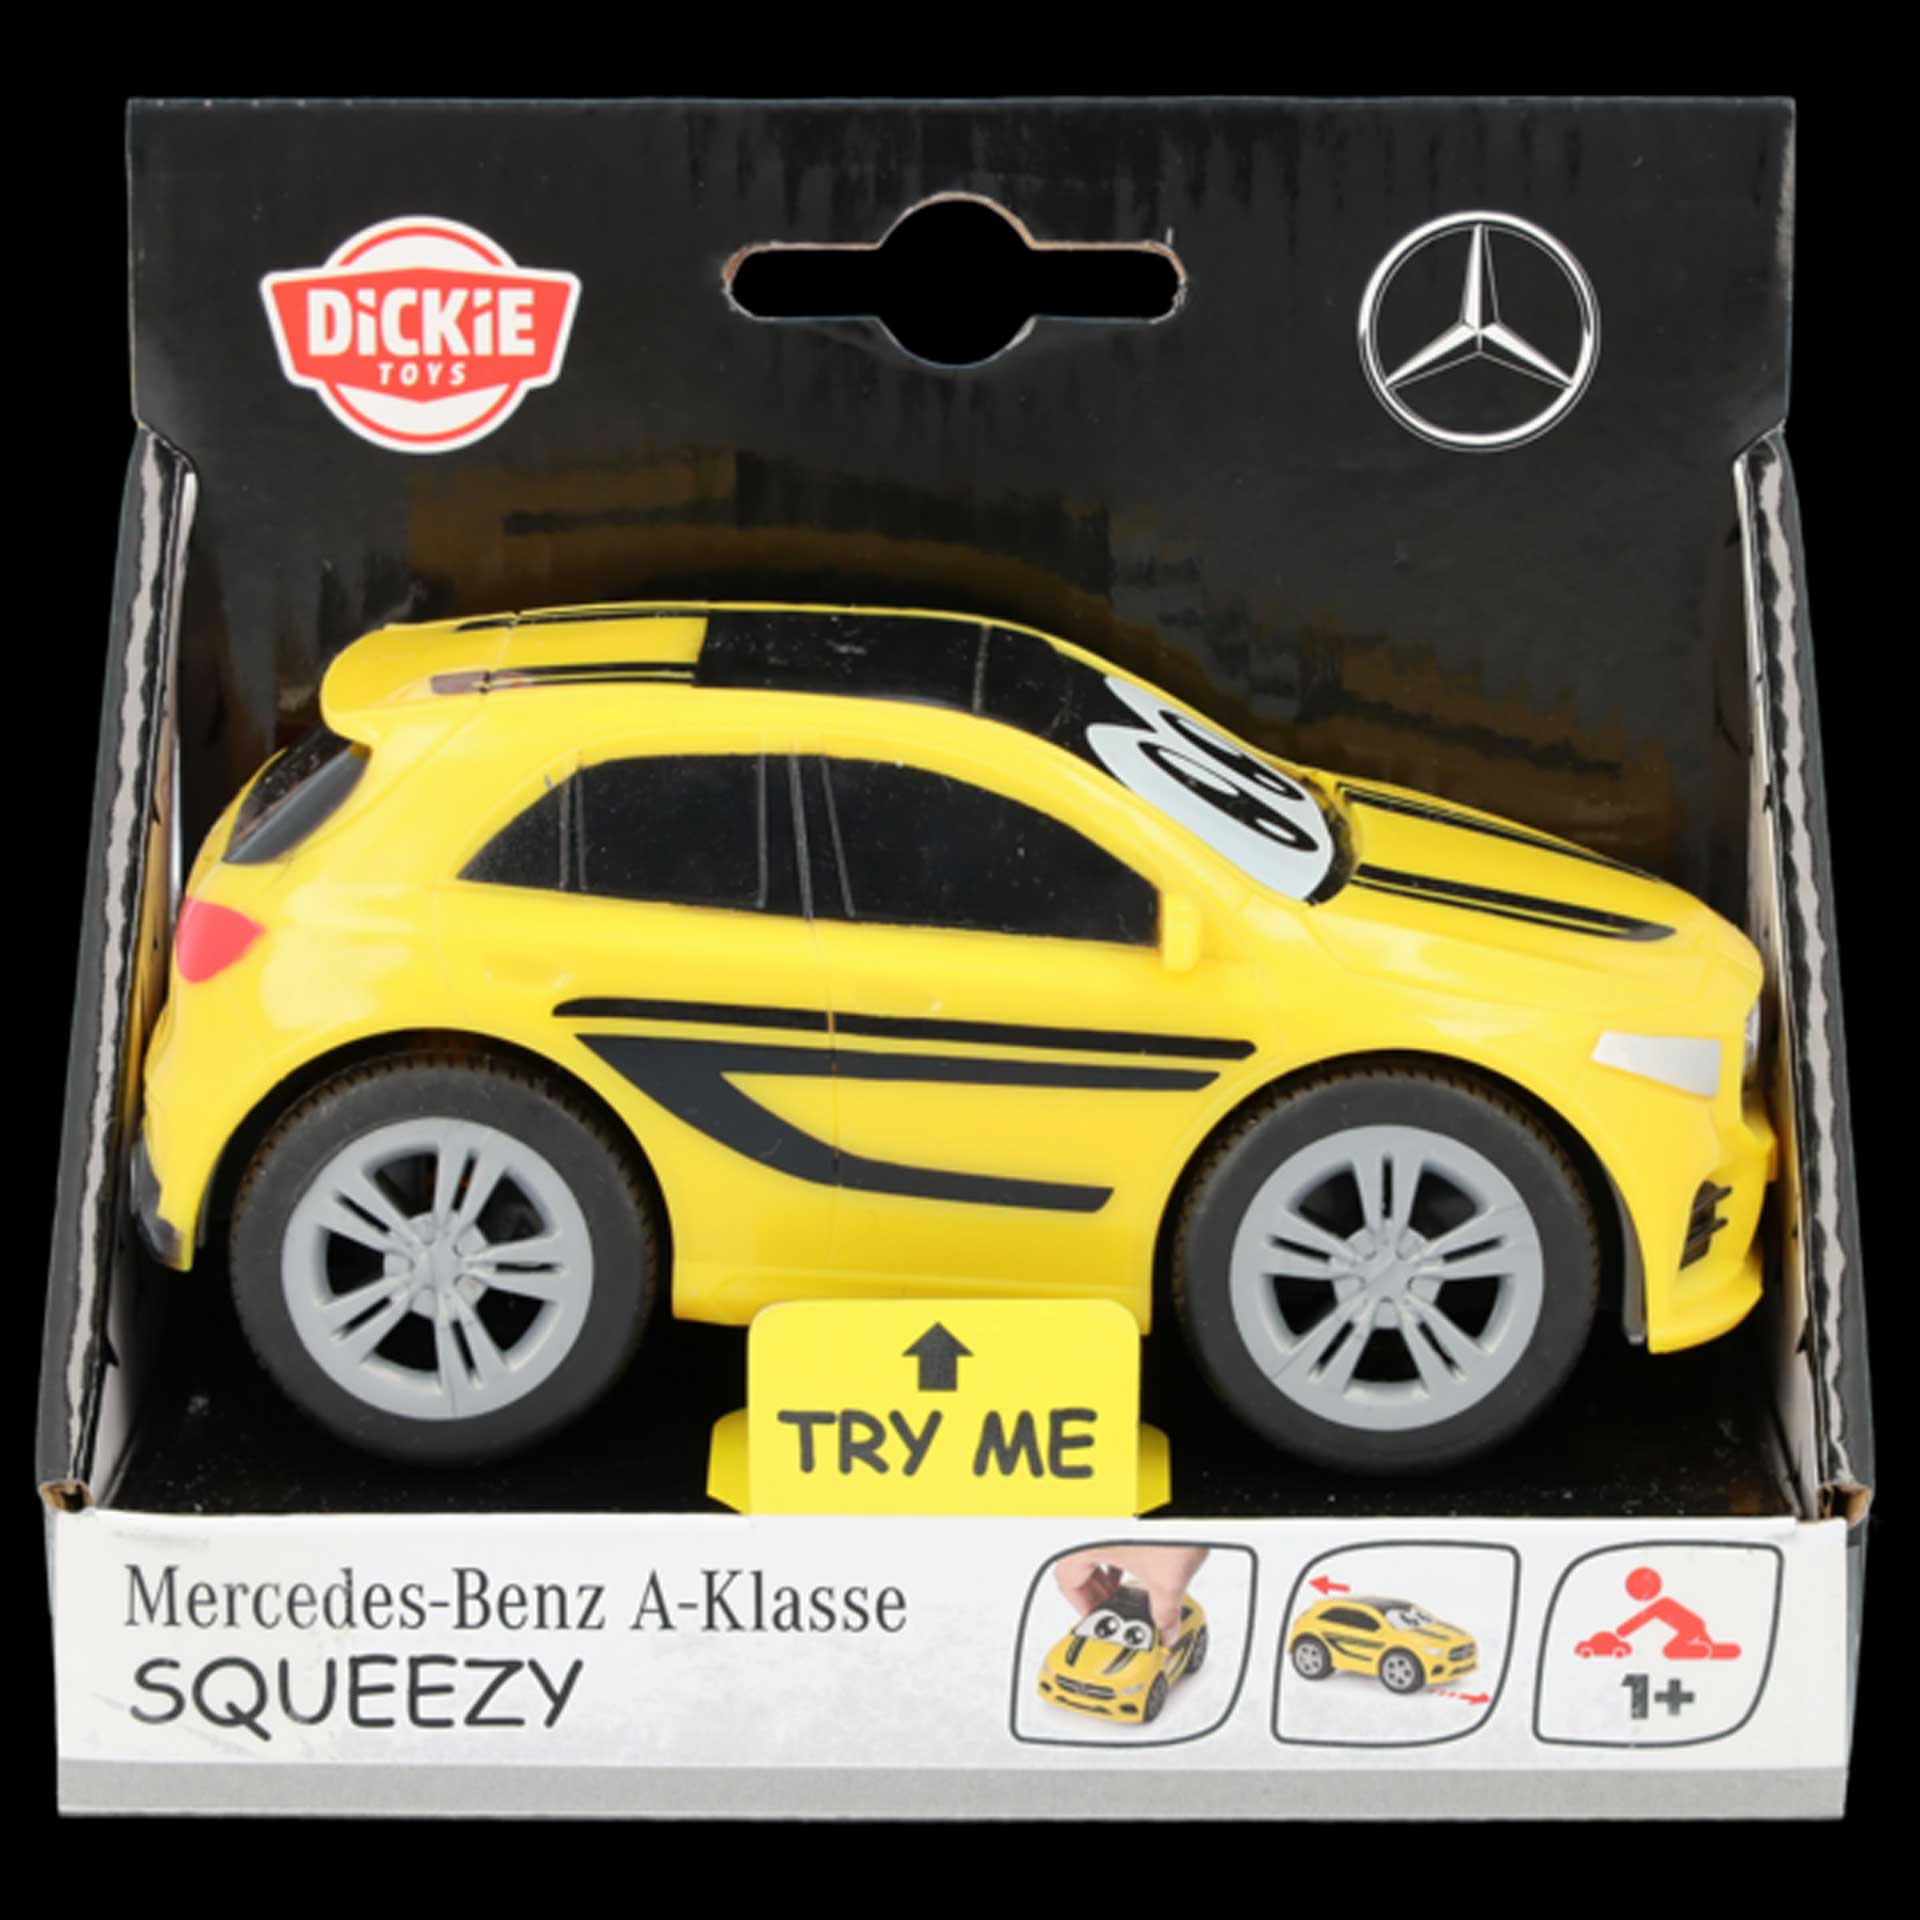 Mercedes-Benz A-Klasse Squeezy Kinderspielzeug by Dickie B66955817